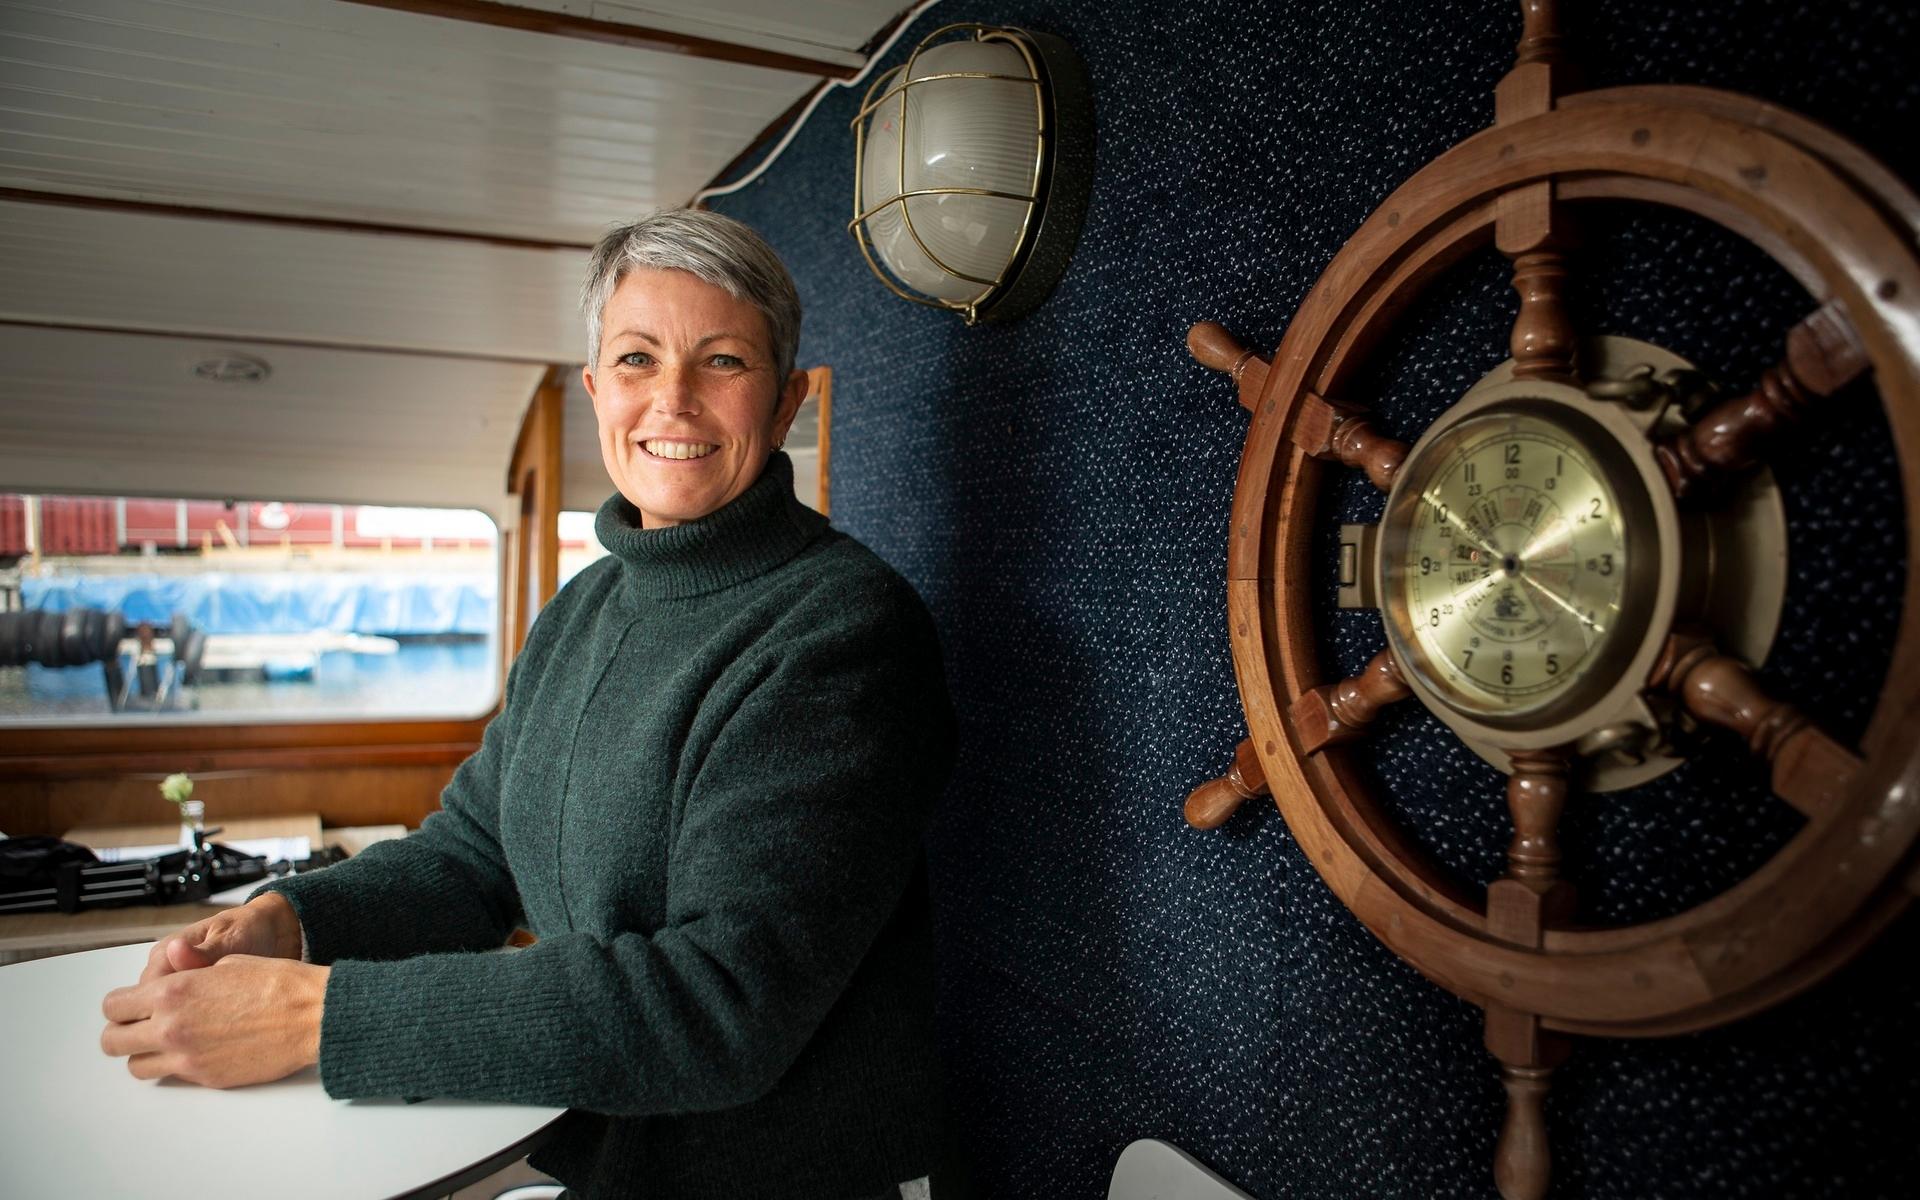 Kvinnliga skeppare är fortfarande en ovanlig syn men mycket arbete görs för att förbättra jämställdheten, säger Annika Kristensson.